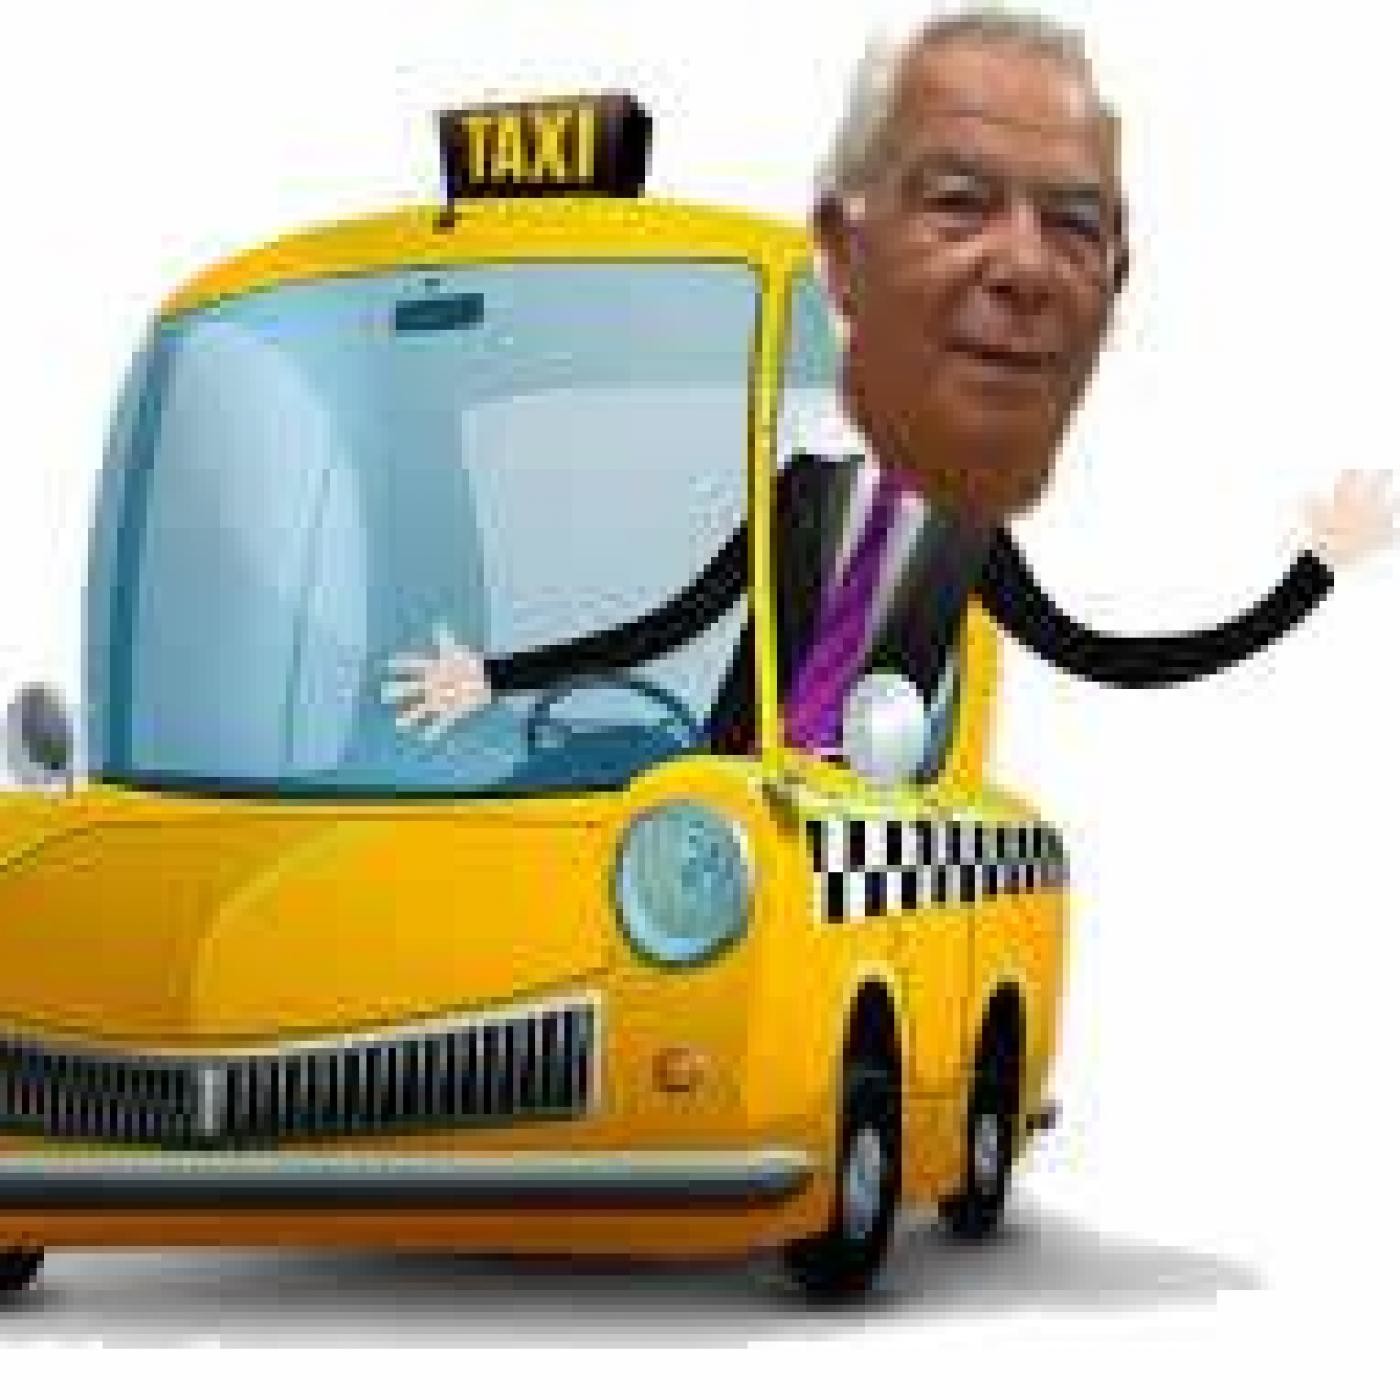 La hora del taxi, viernes 29 de abril de 2016